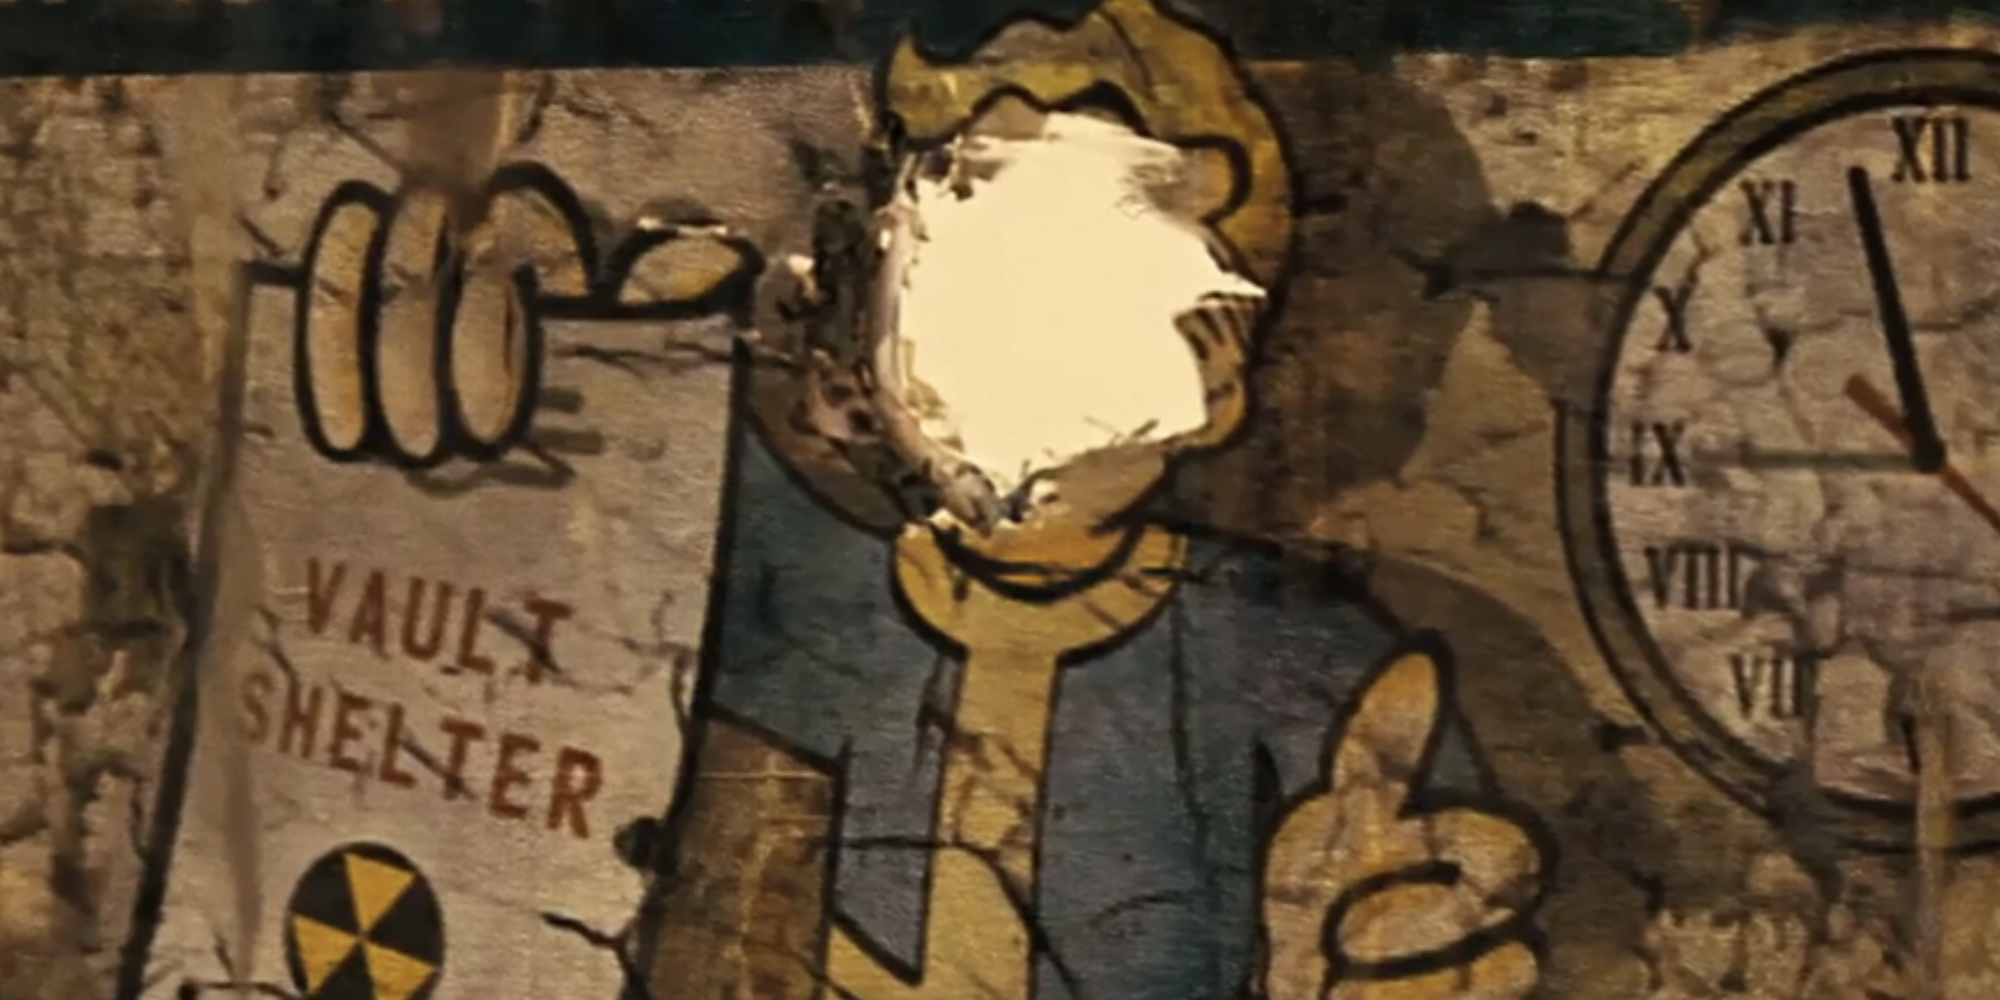 Художник-постановщик серии Fallout объясняет большие изменения в дизайне Pip-Boy